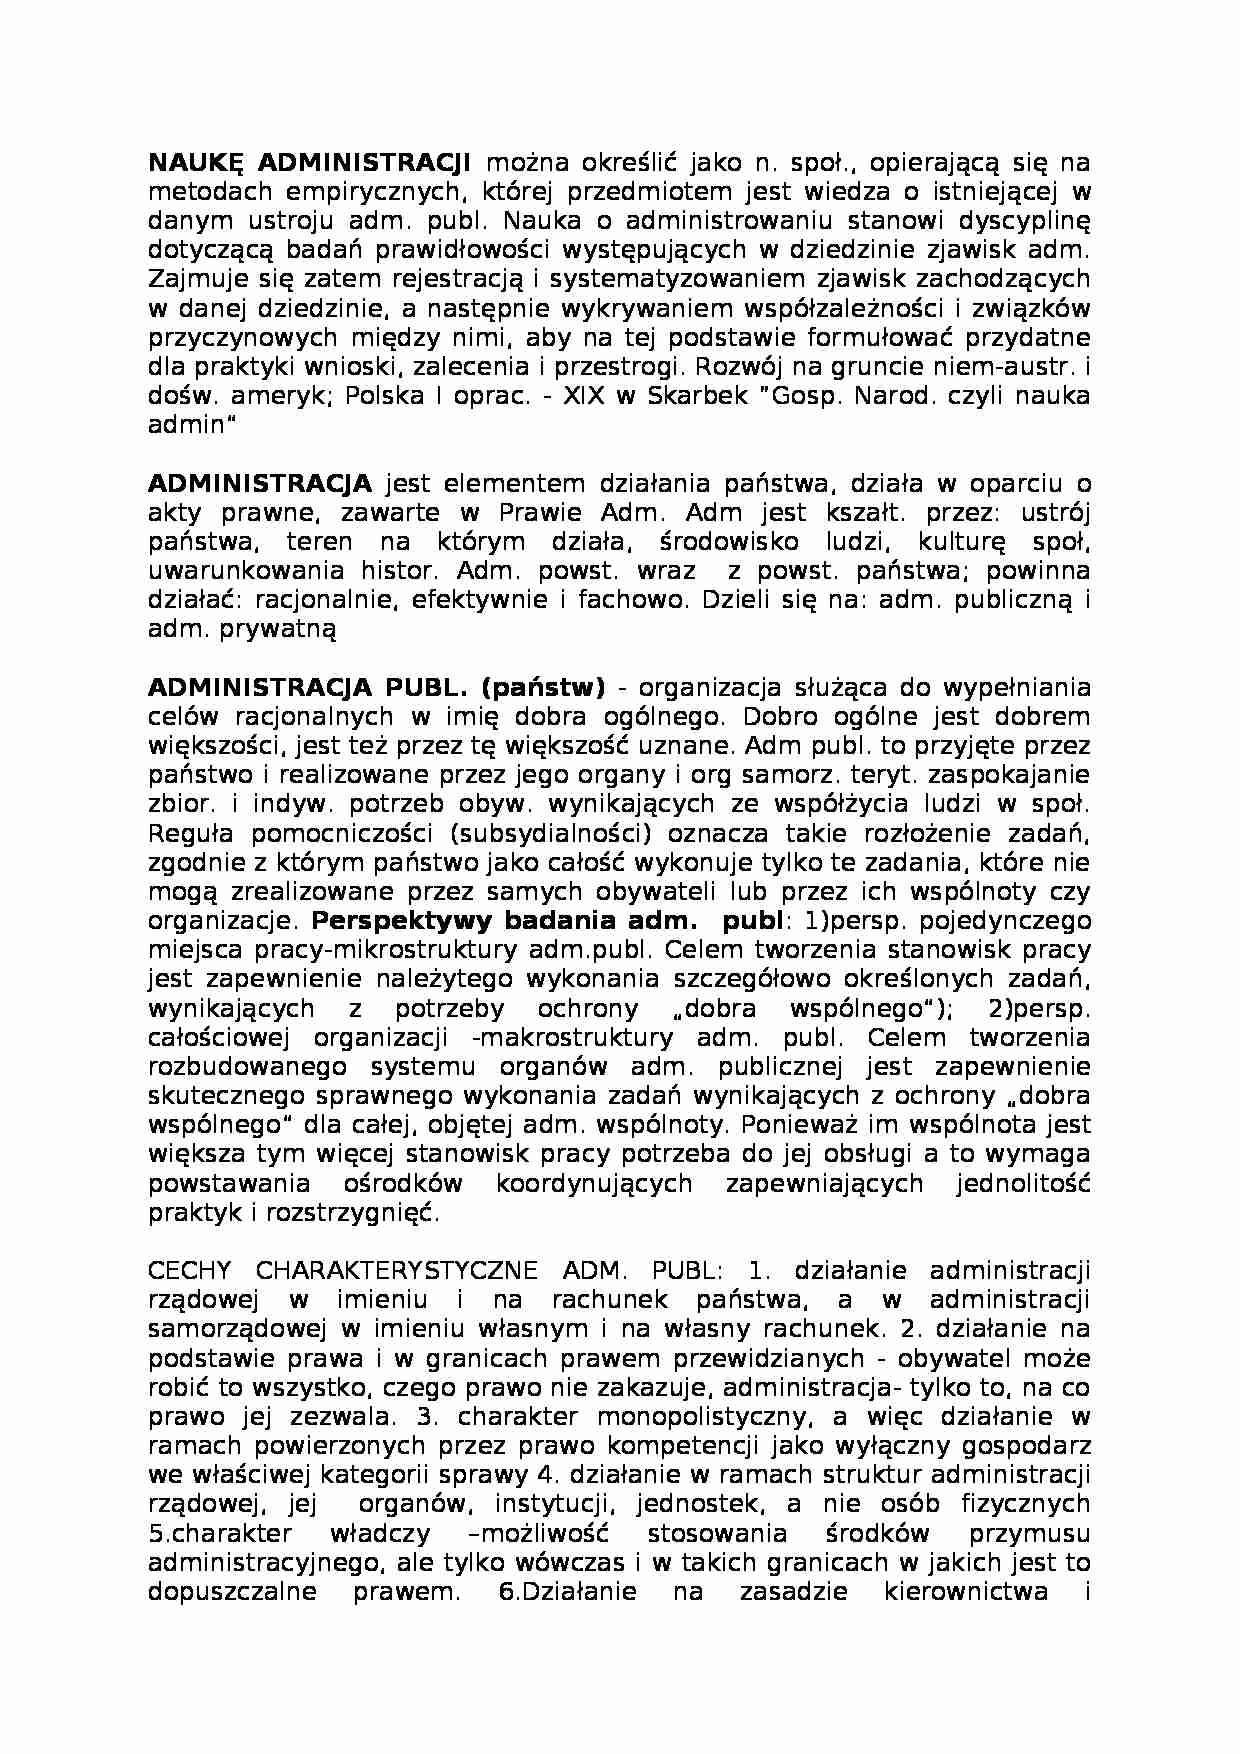 Nauka administracji - Organy administracji  publicznej  - strona 1